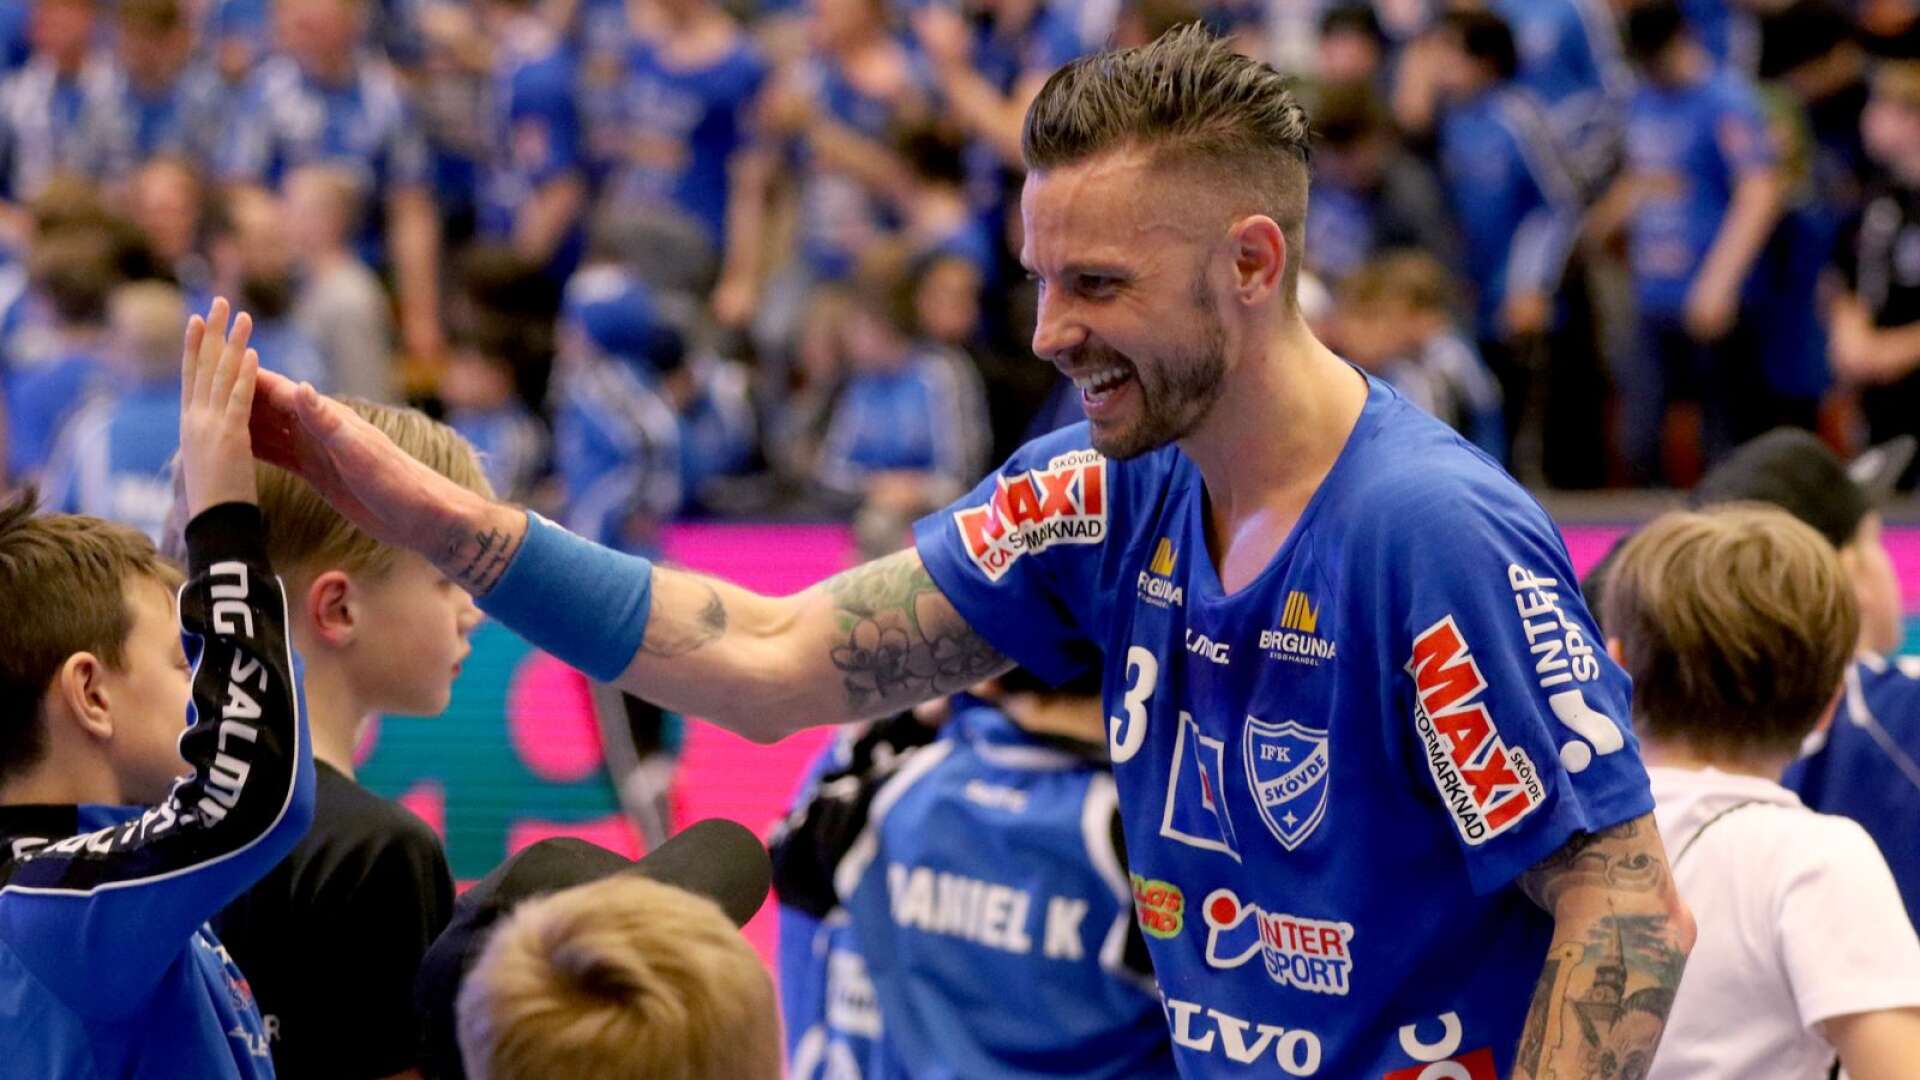 Rasmus Wremer firar efteråt. IFK Skövde stod som segrare i det första kvartsfinalmötet med Lugi HF.